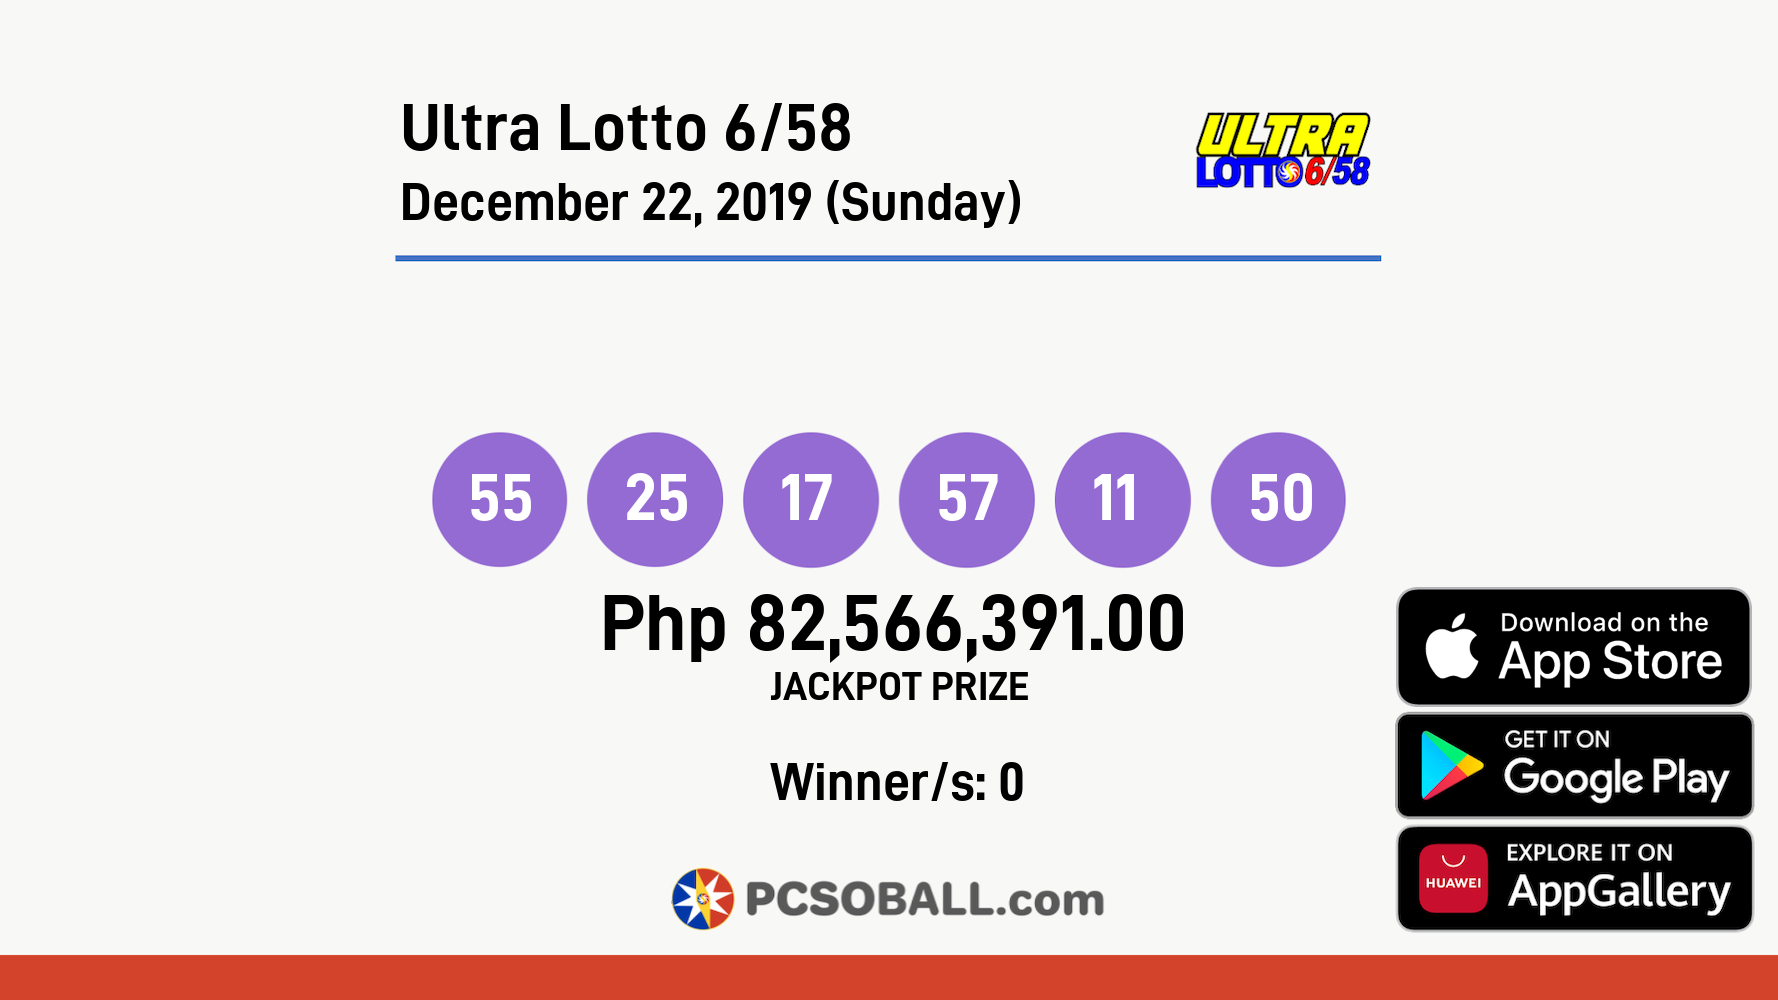 Ultra Lotto 6/58 December 22, 2019 (Sunday) Result